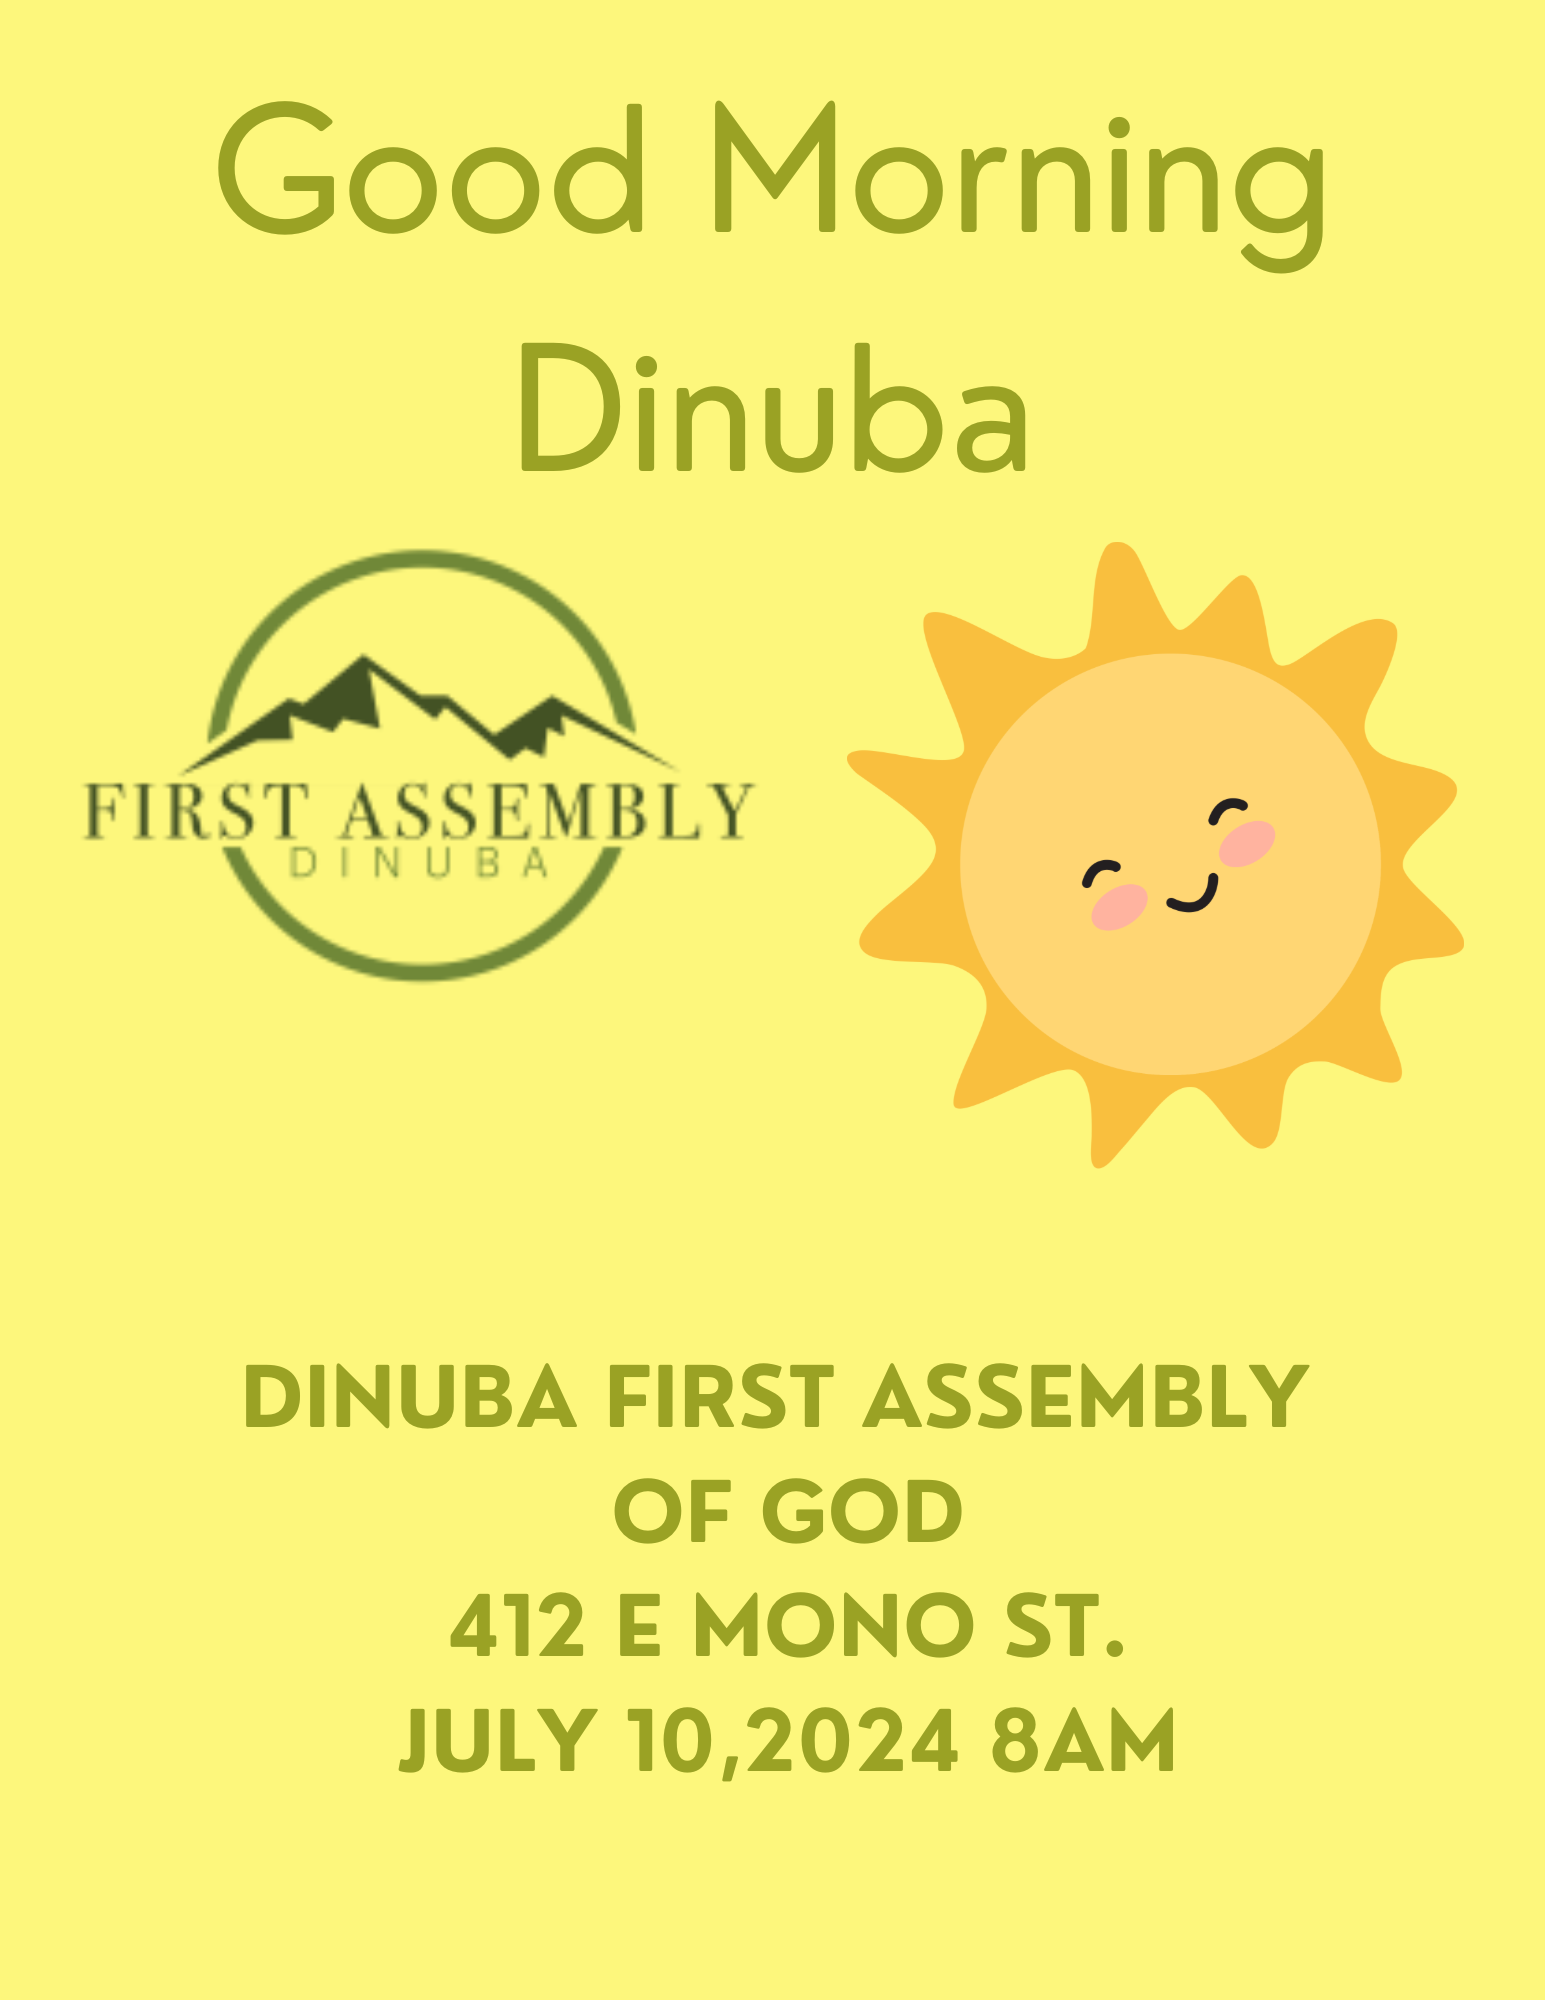 DINUBA FIRST ASSEMBLY